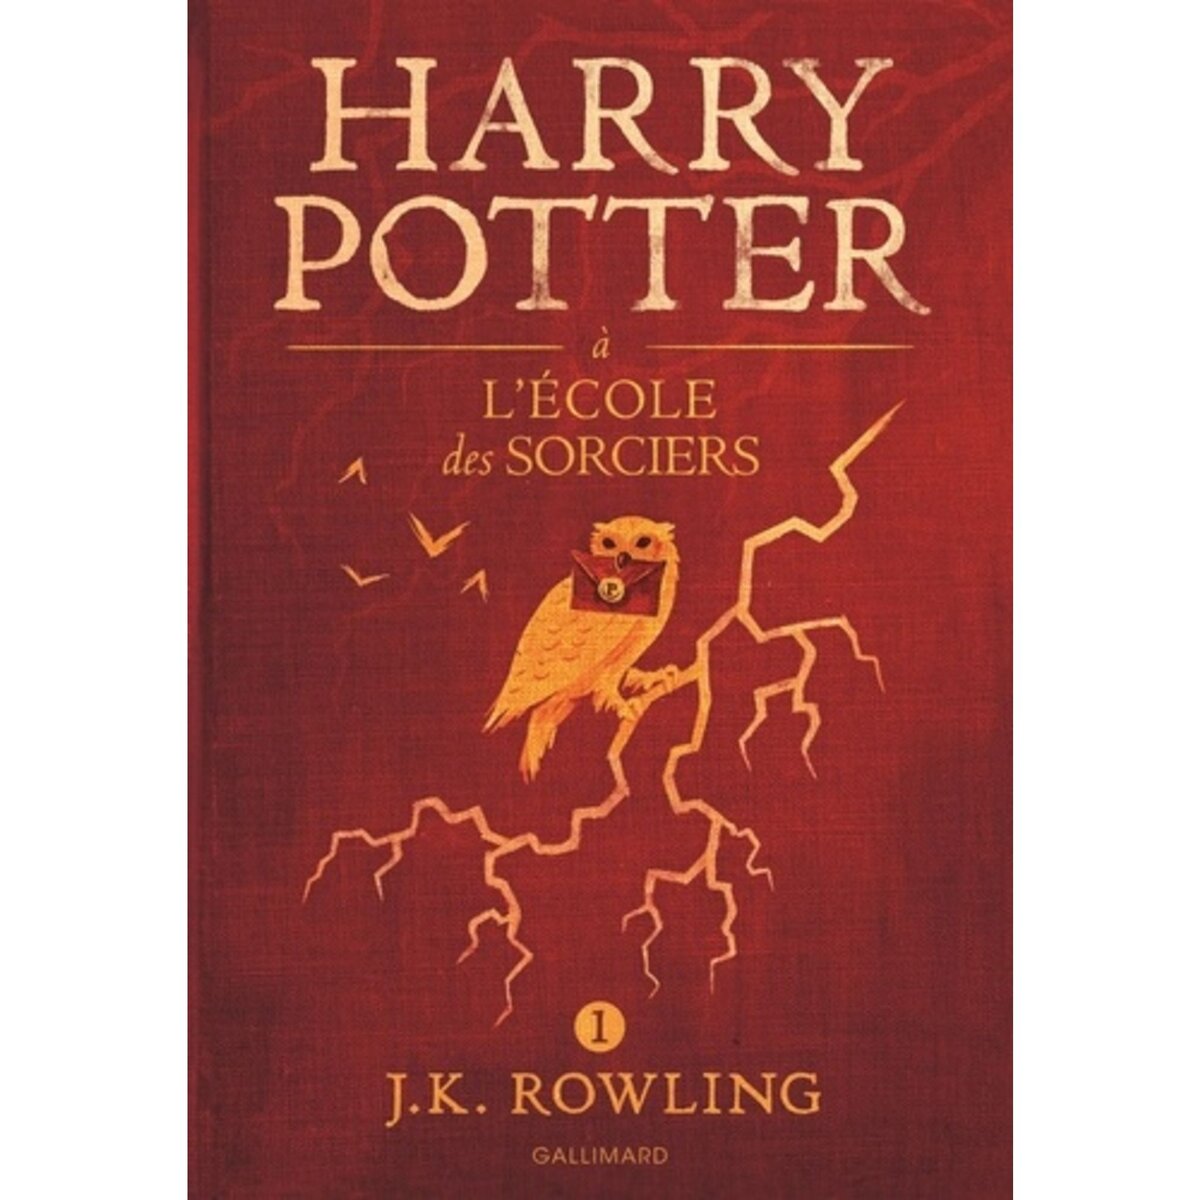 HARRY POTTER TOME 1 : HARRY POTTER A L'ECOLE DES SORCIERS, Rowling J.K. pas  cher 